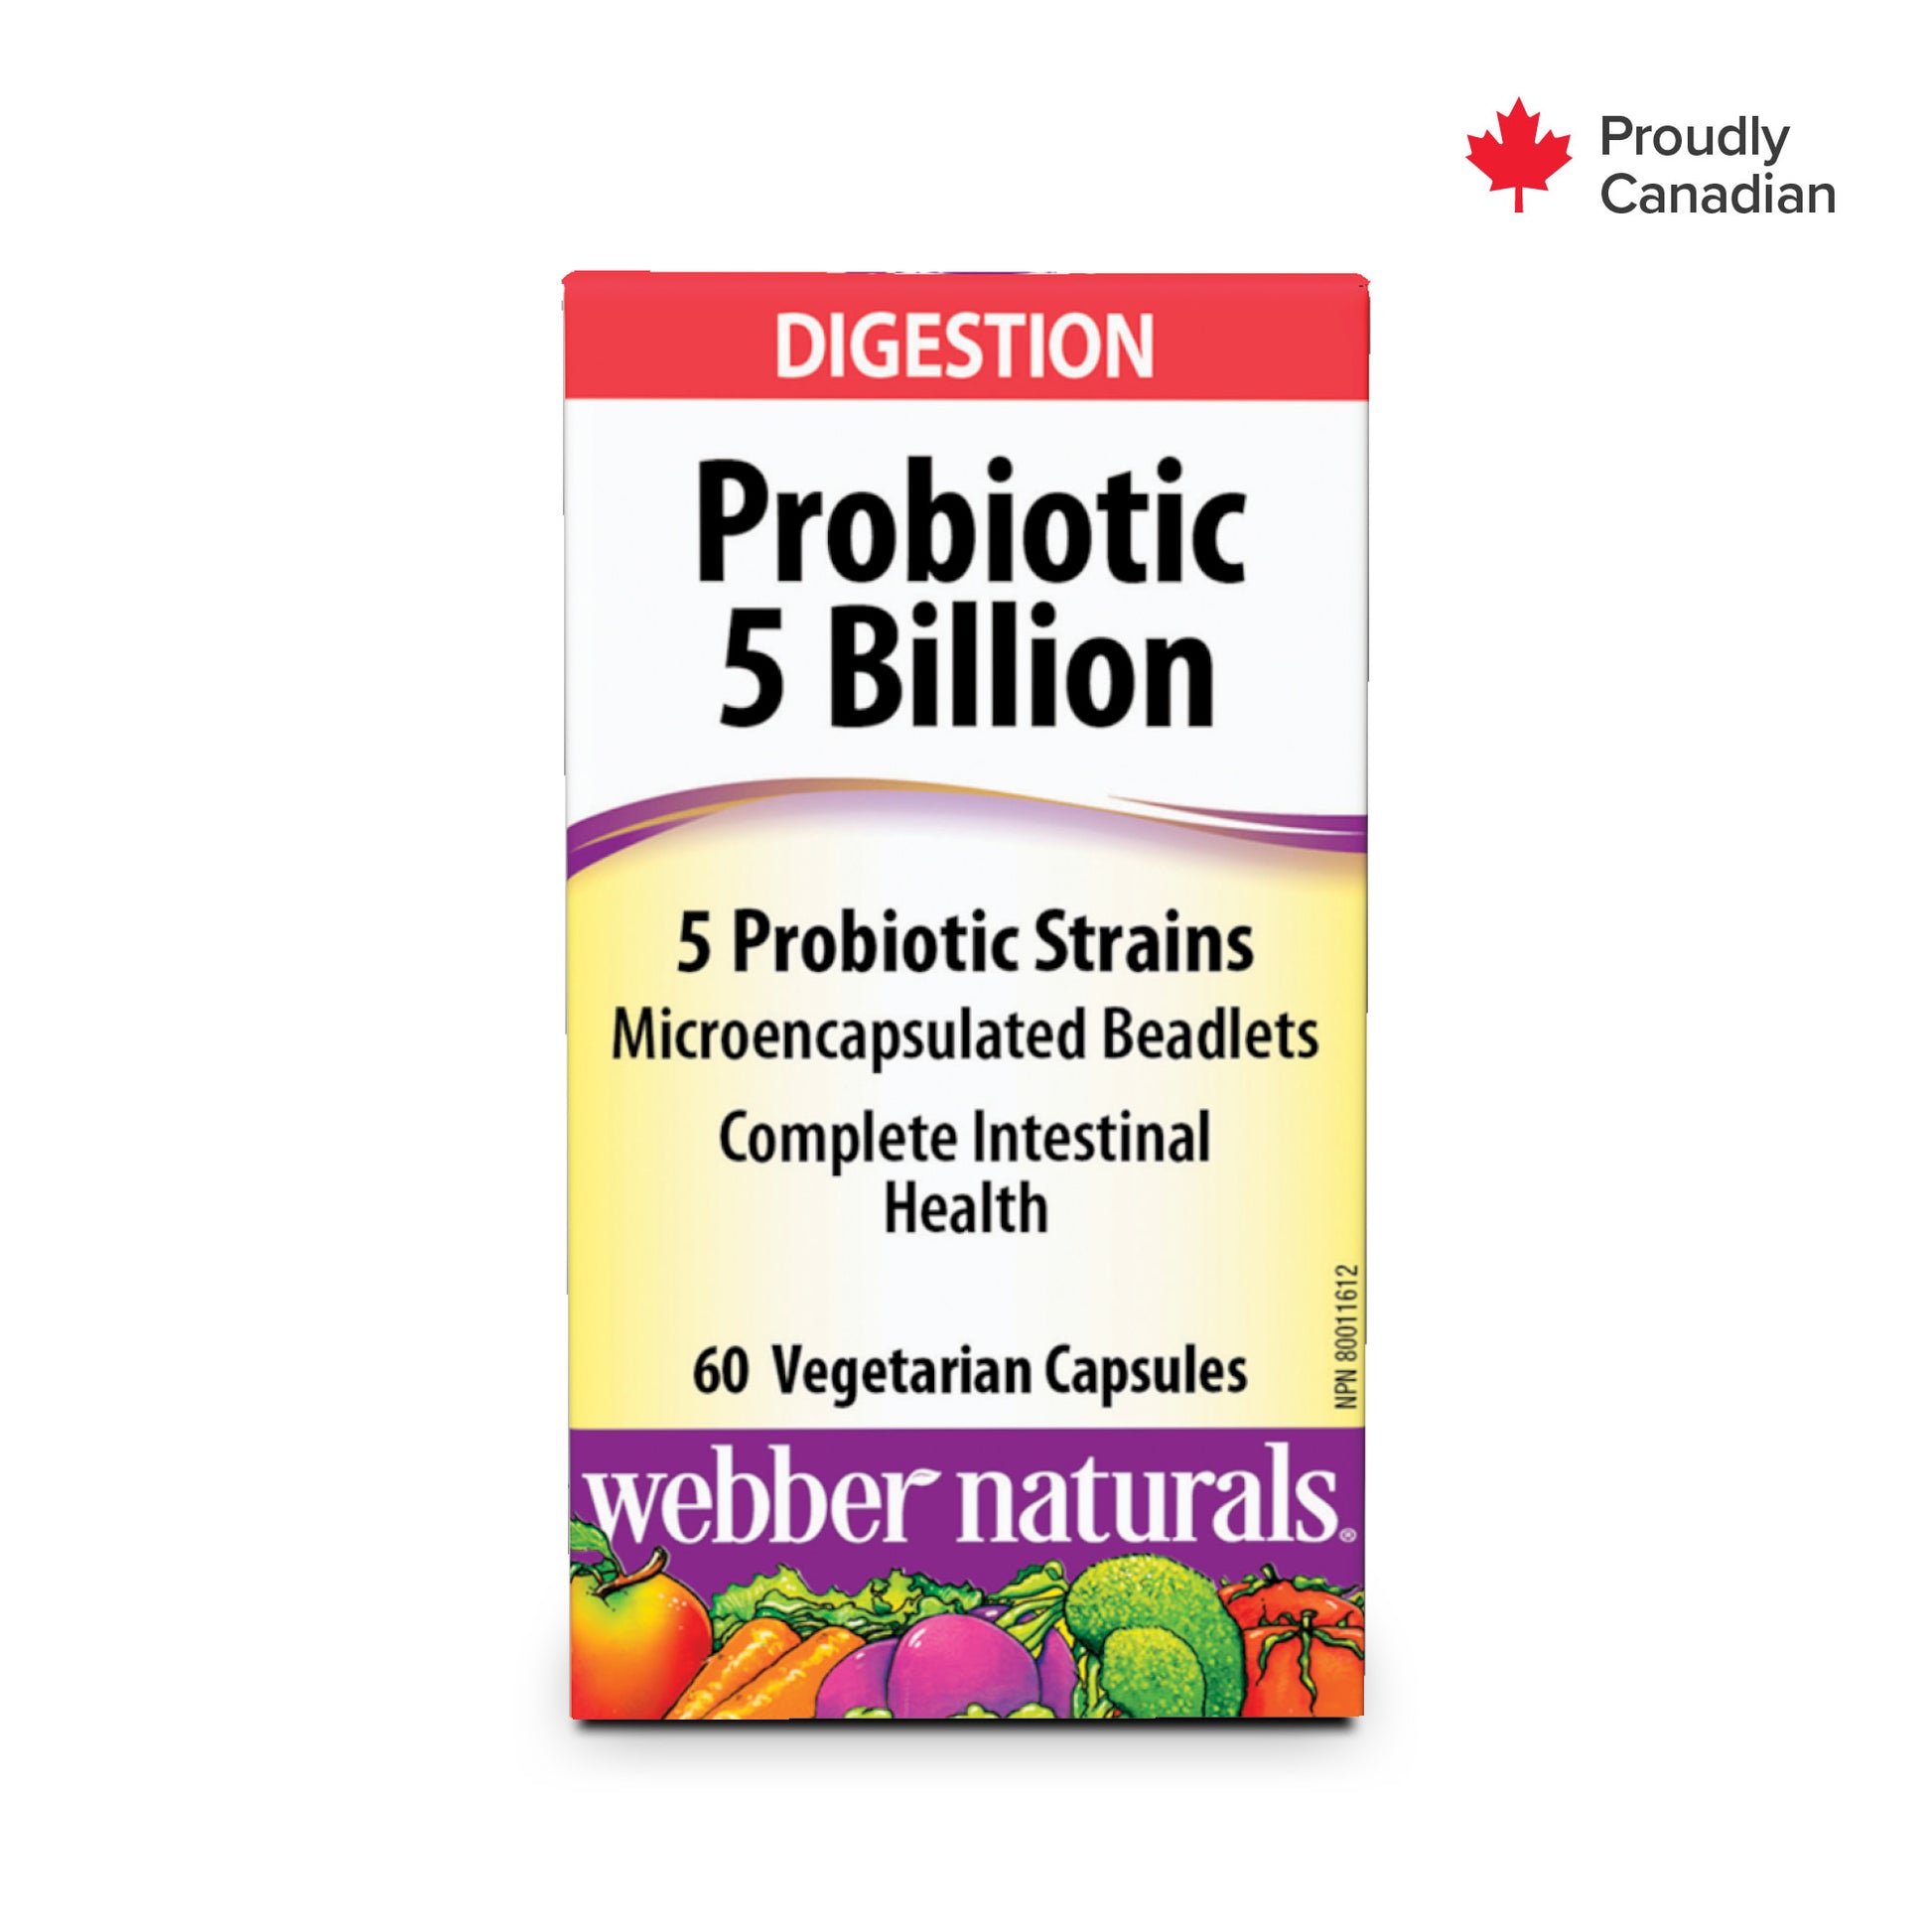 Probiotic 5 Billion 5 Probiotic Strains for Webber Naturals|v|hi-res|WN3214